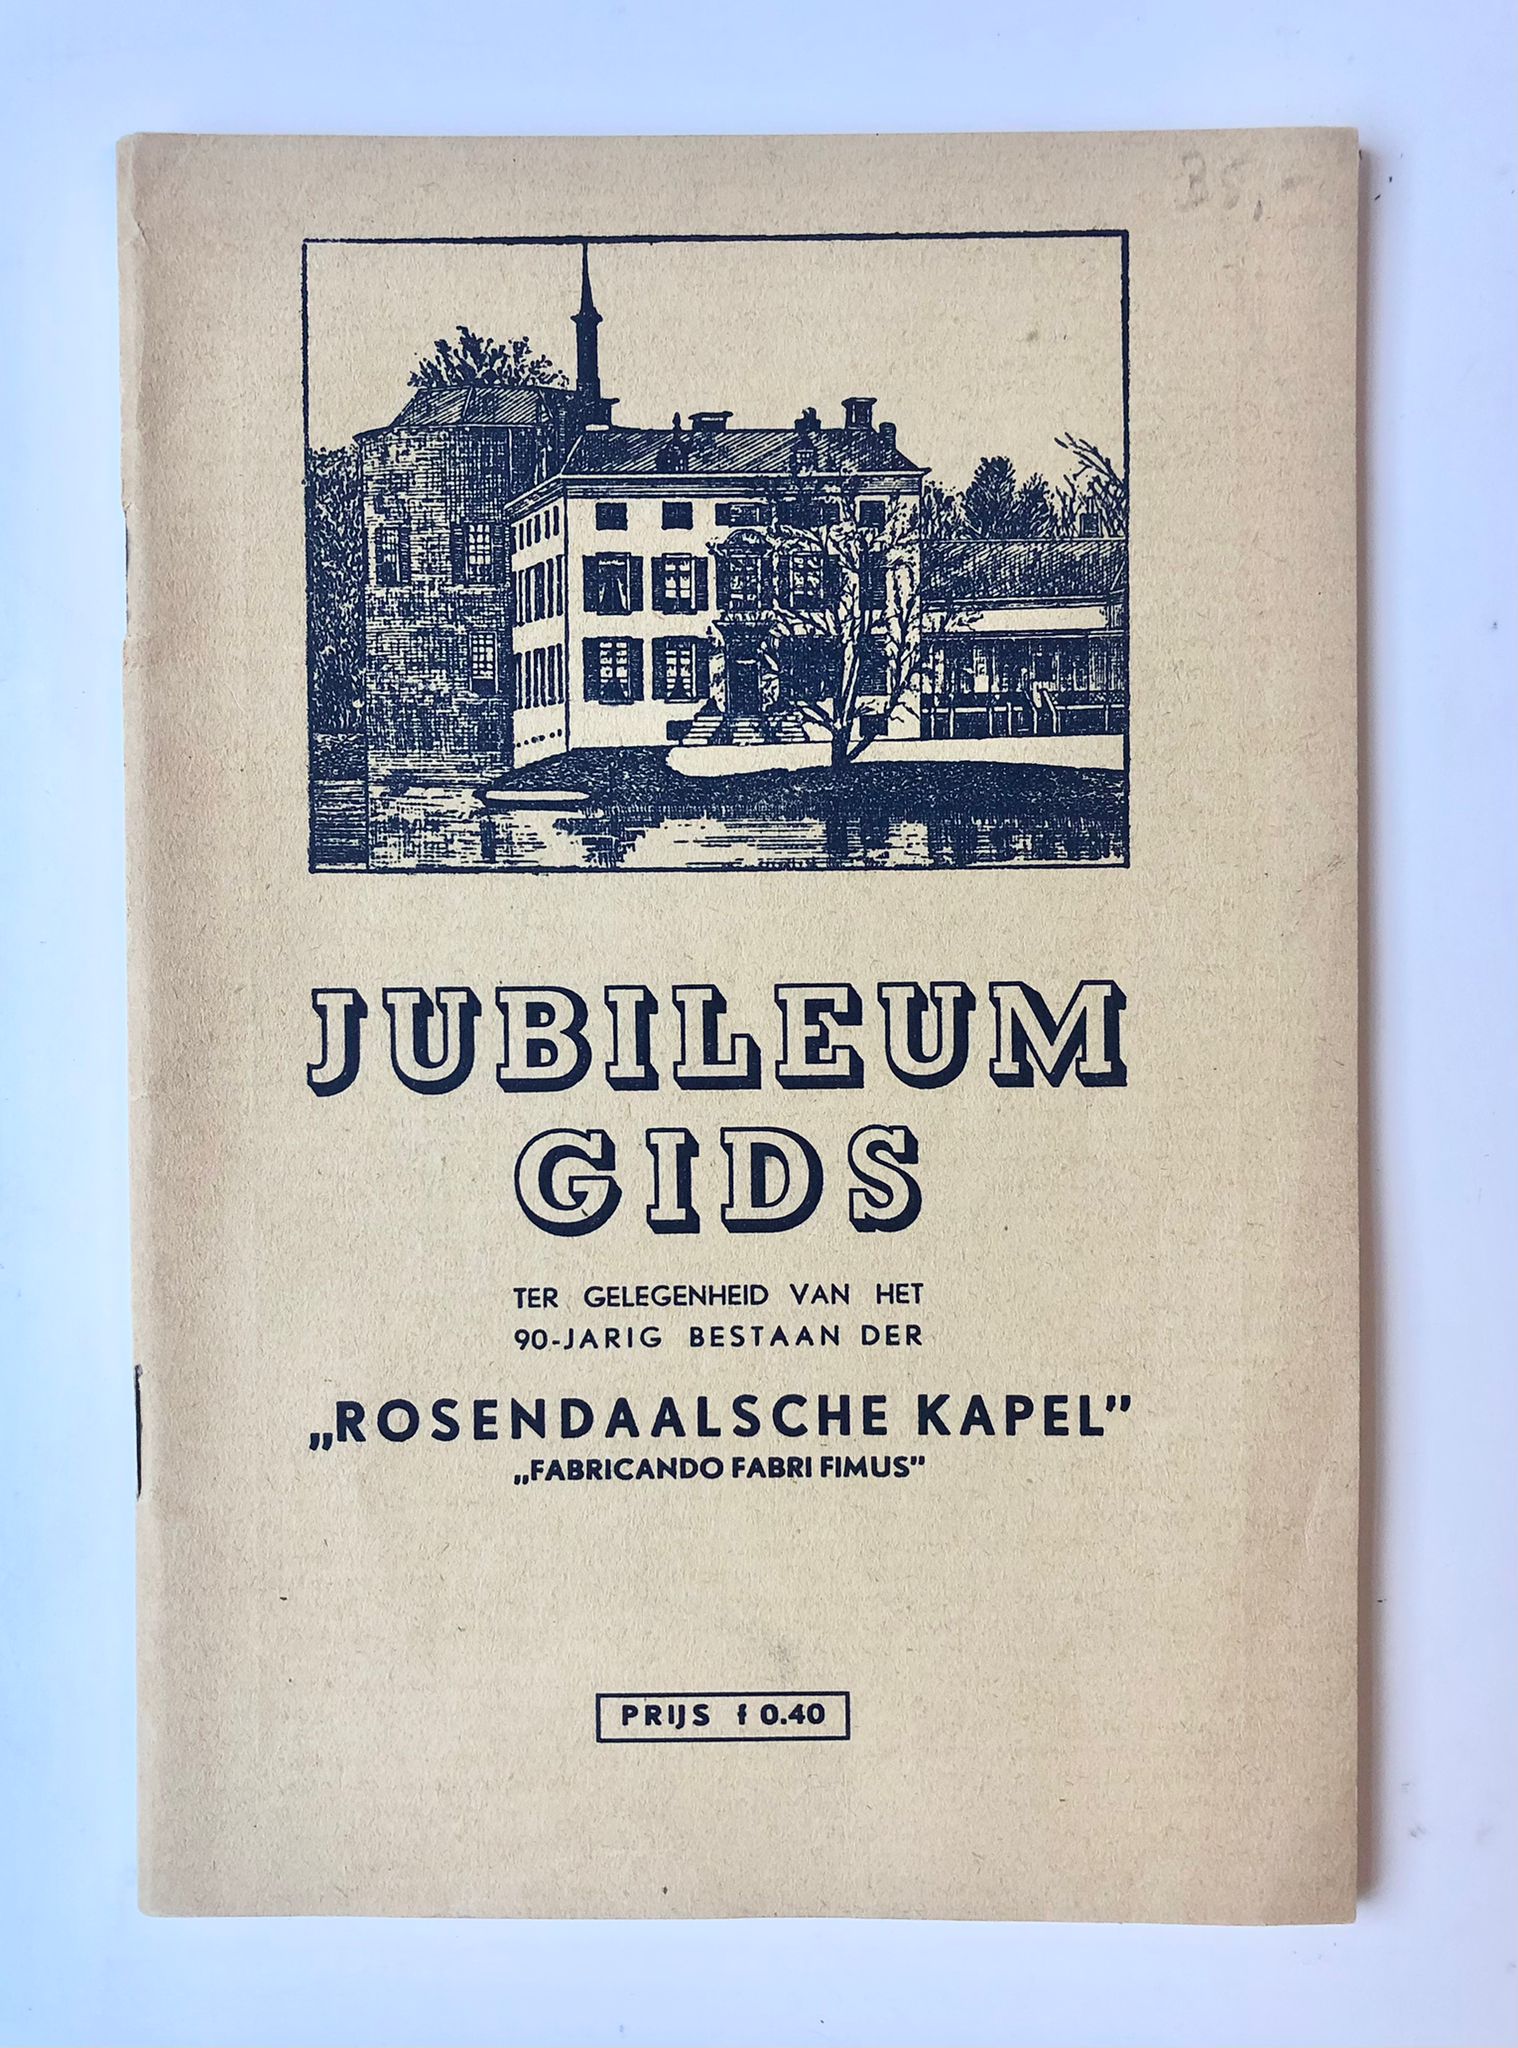 [Music Jubileum 1948] Officiele gids van het nationaal federatief muziekconcours, 11-13-6-1948 te Rozendaal (Geld.), 72 pag., geillustreerd. Rosendaalsche Kapel.